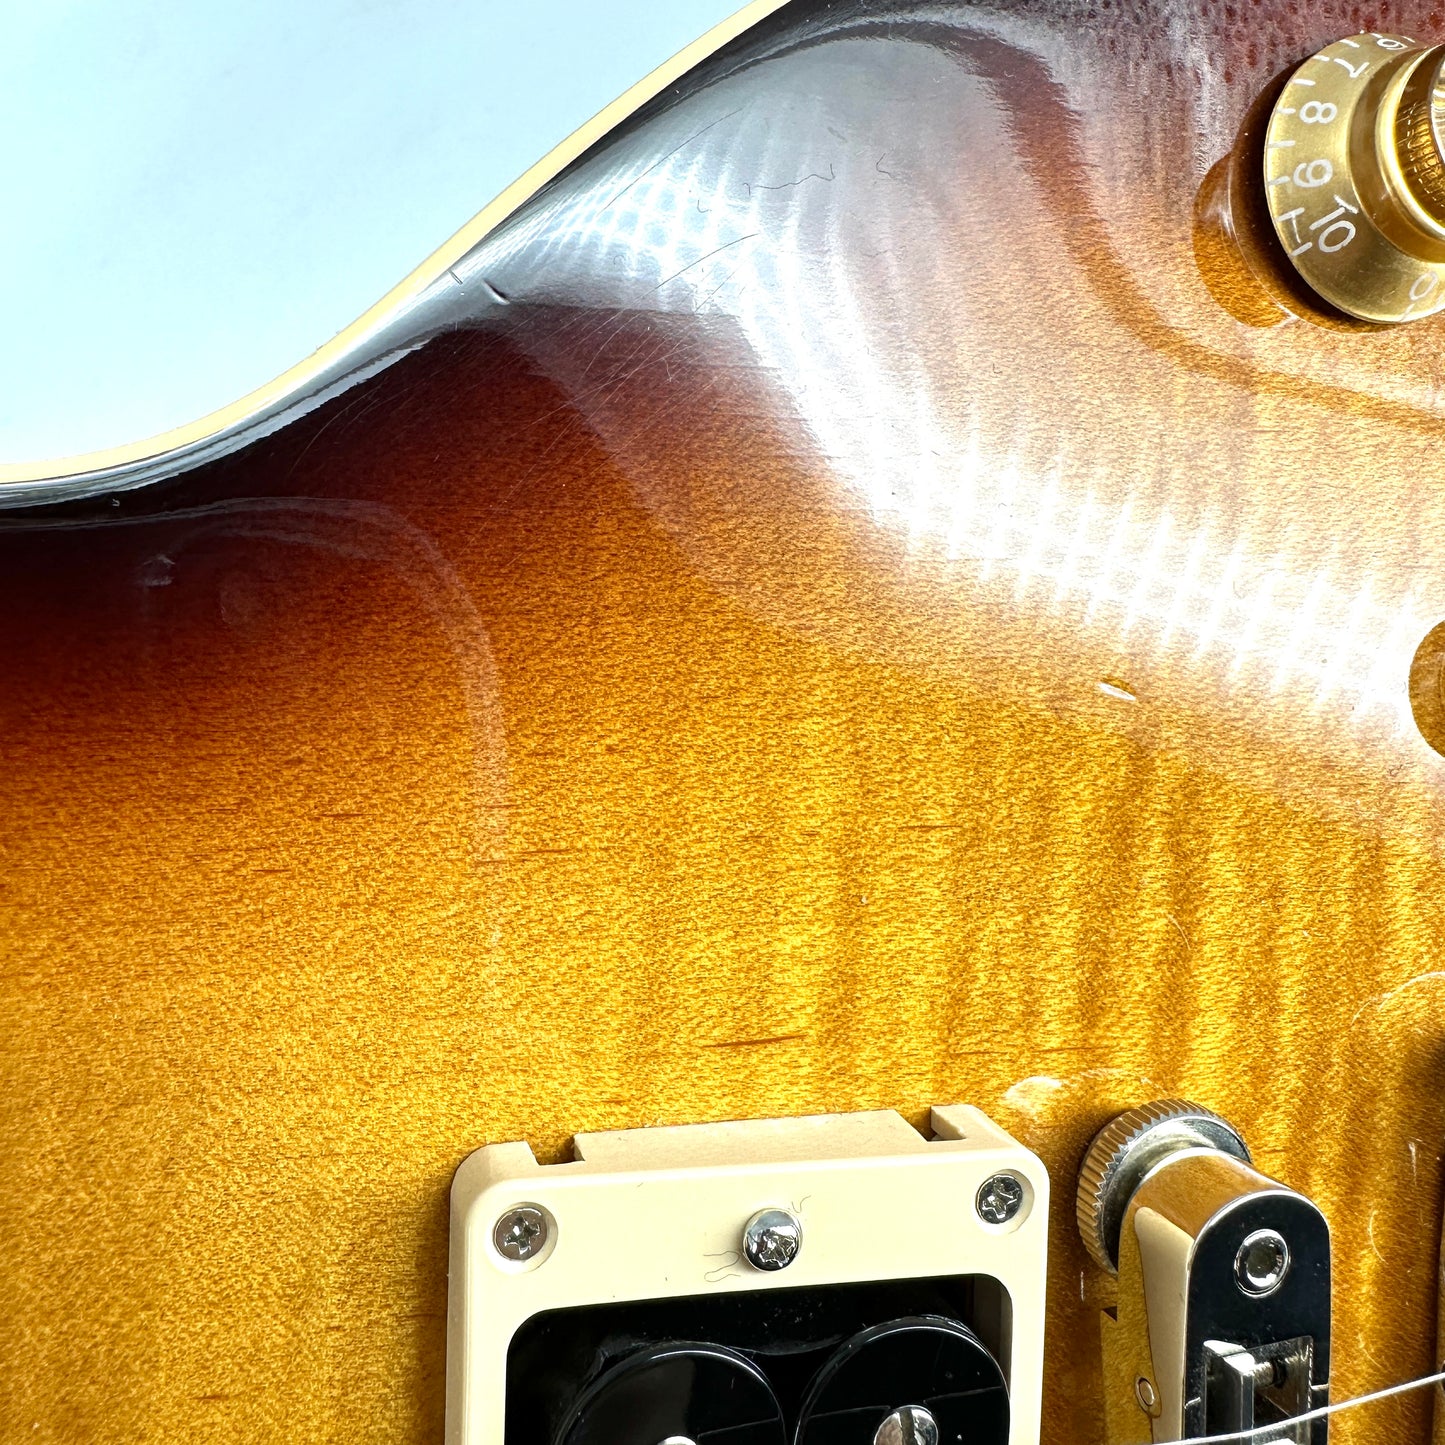 2015 Gibson Les Paul Less Plus – Desert Burst